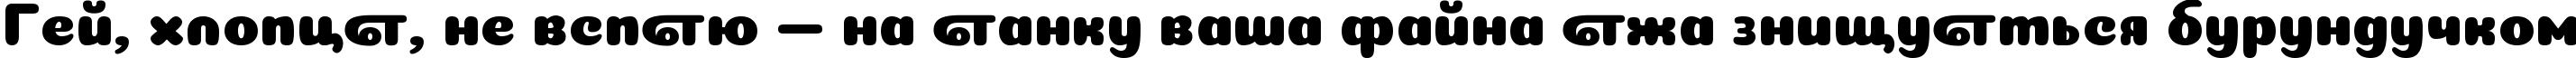 Пример написания шрифтом Coiny Cyrillic текста на украинском